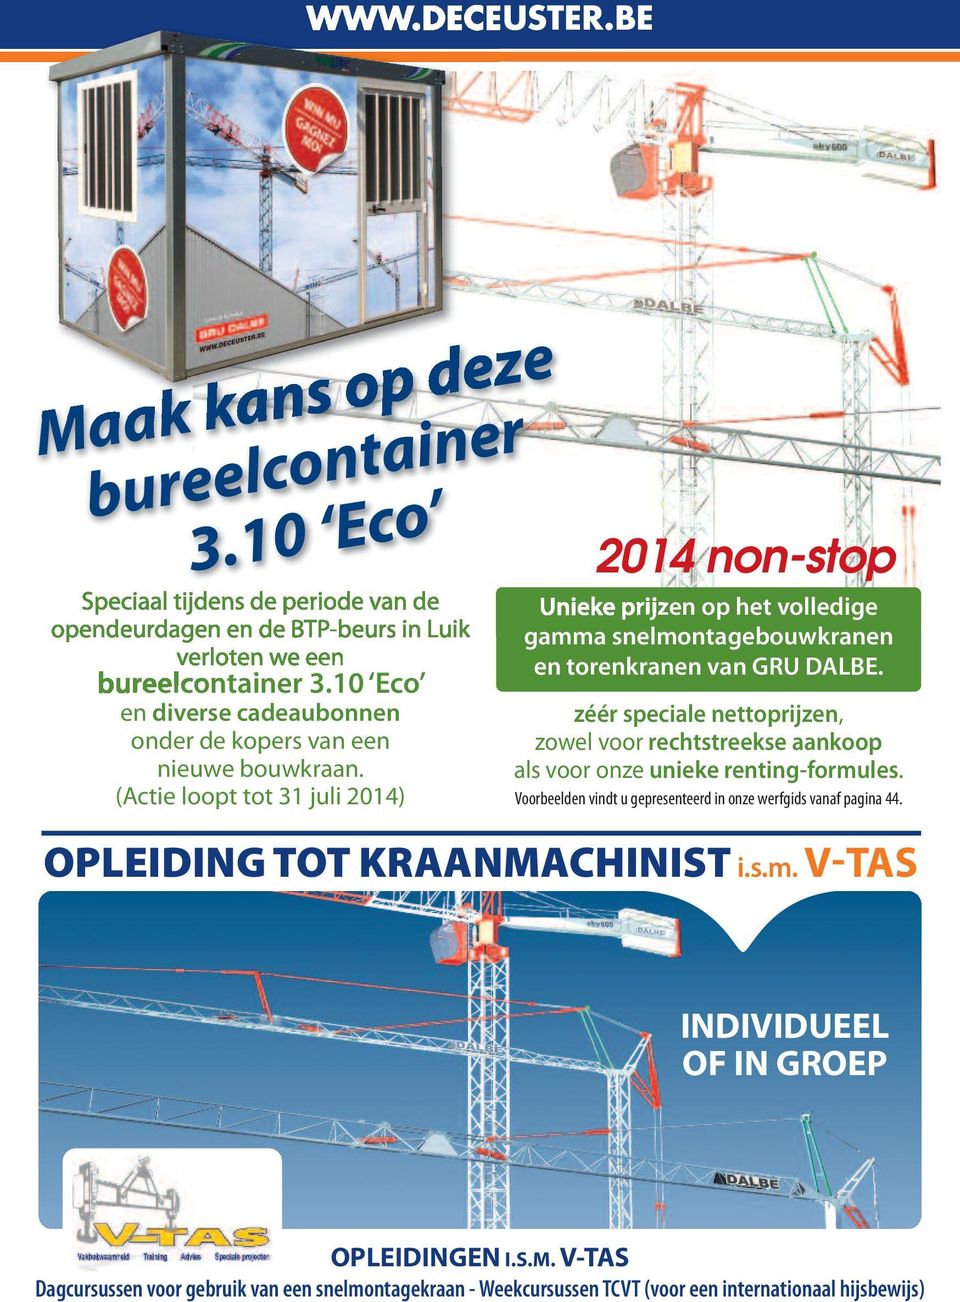 (Actie loopt tot 31 juli 2014) 2014 non-stop Unieke prijzen op het volledige gamma snelmontagebouwkranen en torenkranen van GRU DALBE.